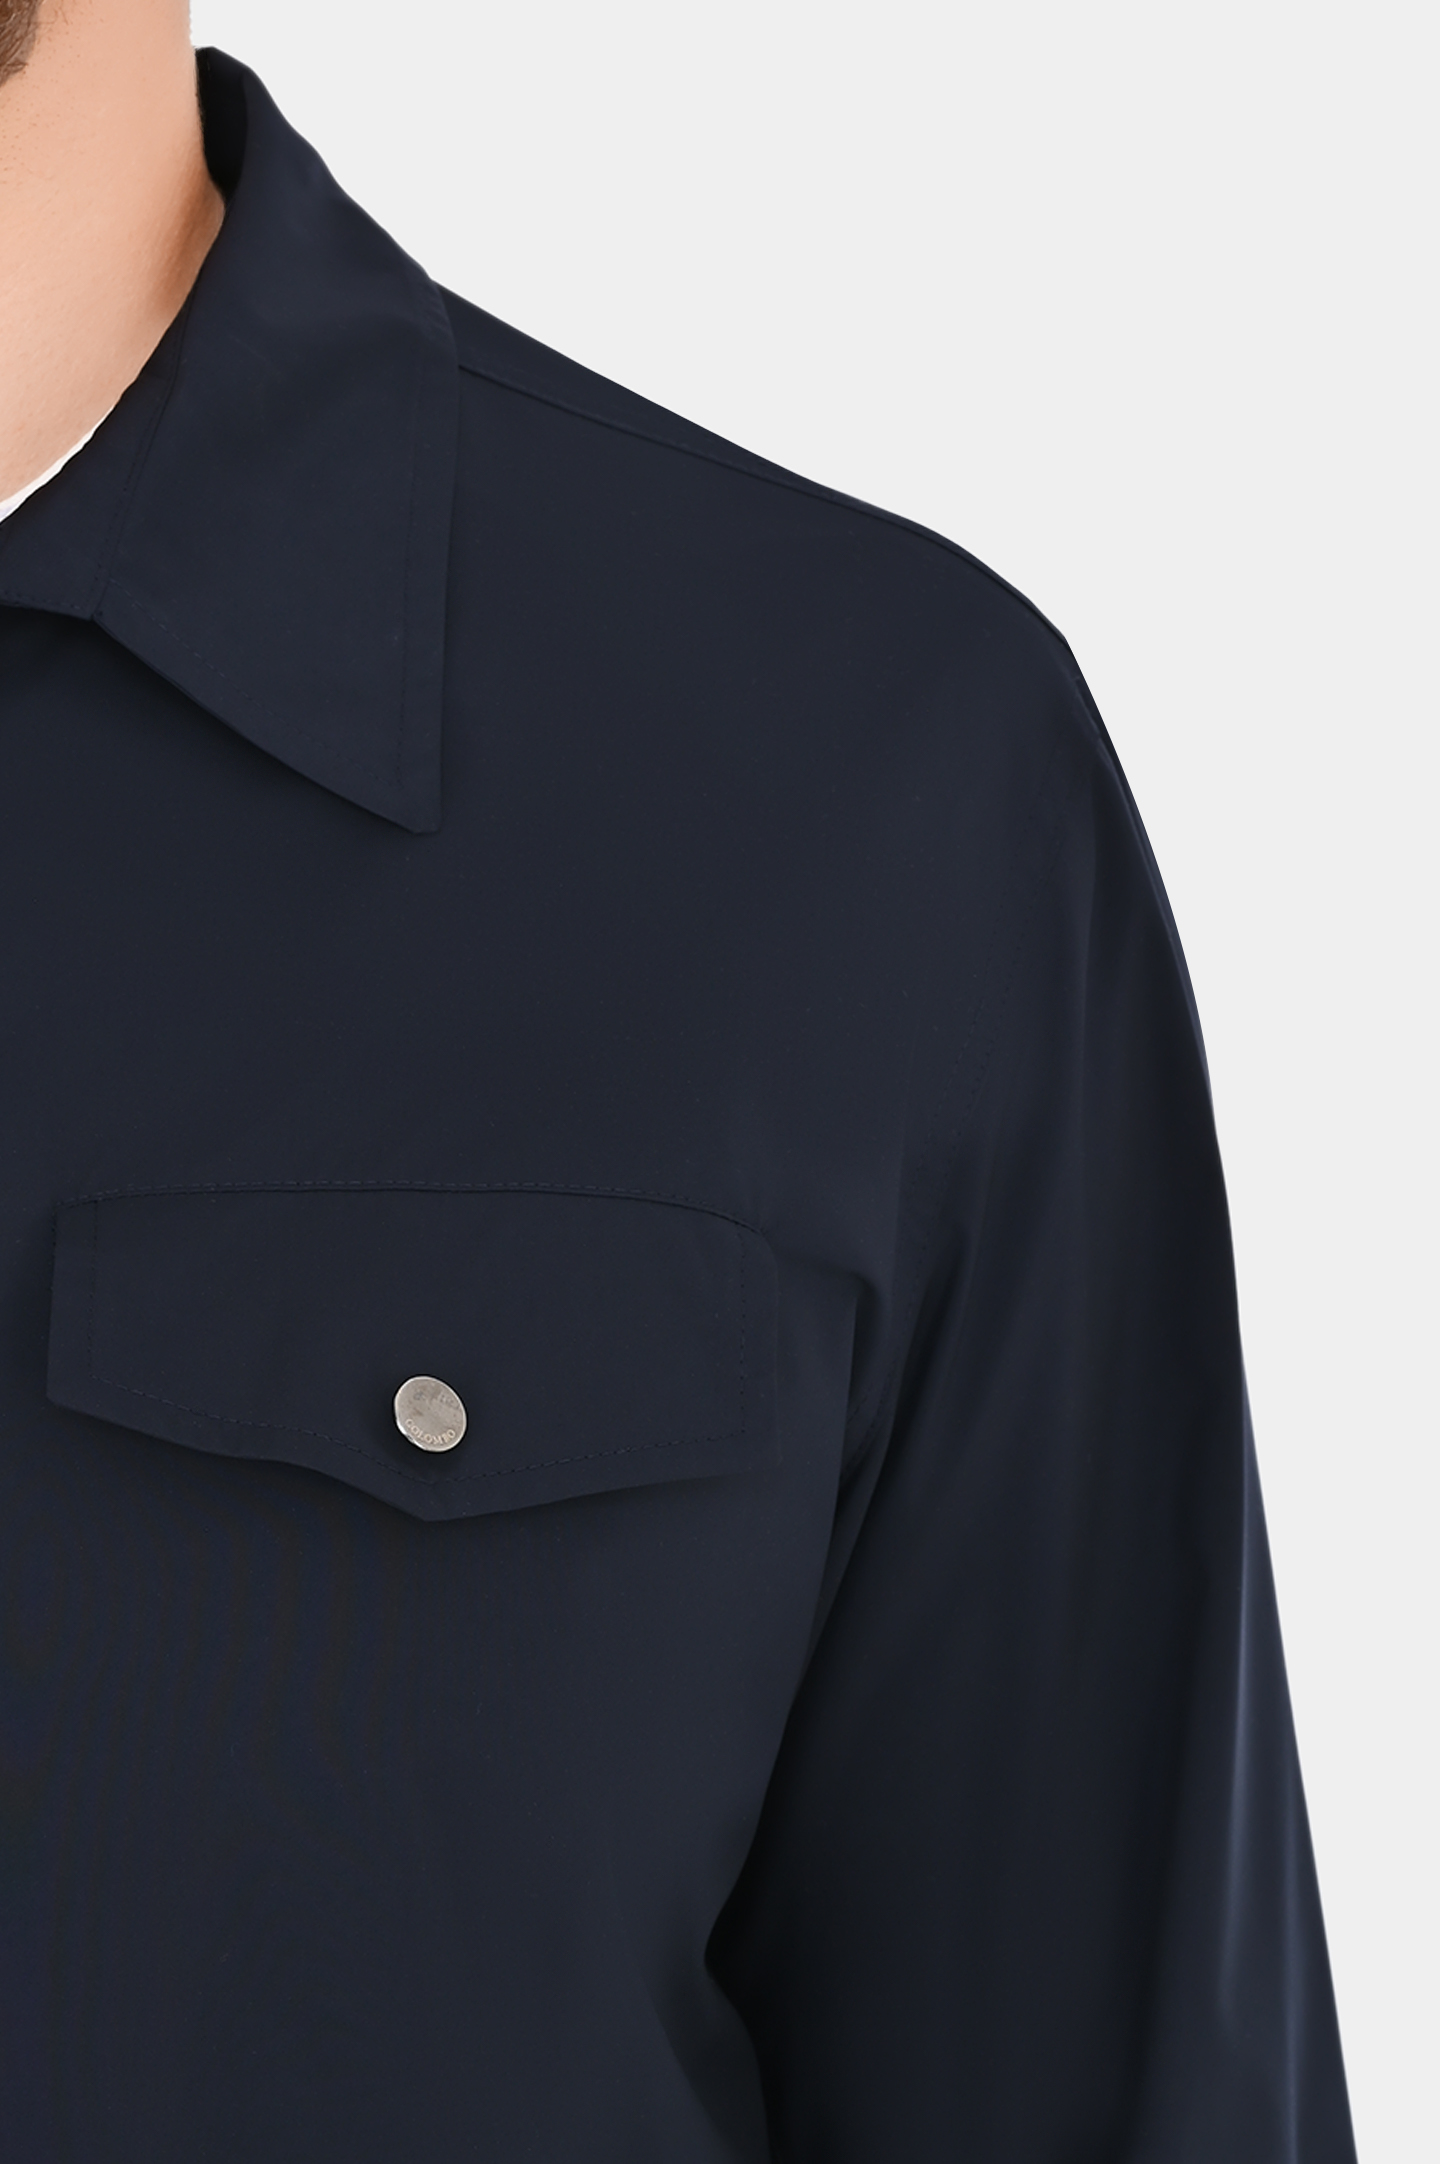 Куртка на кнопках с карманами COLOMBO GI00451/-/T0283, цвет: Темно-синий, Мужской